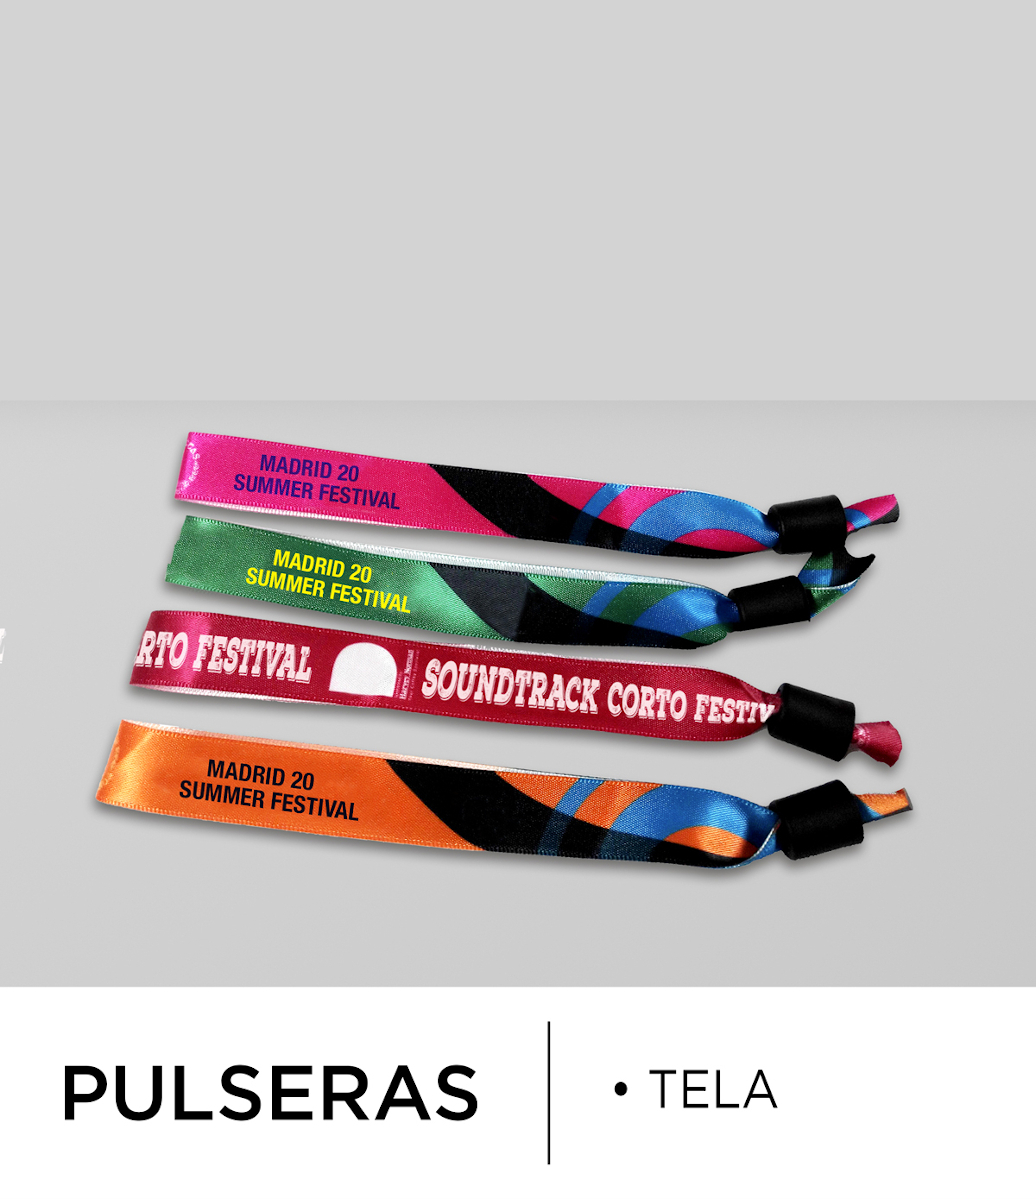 Pulseras Tela Personalizadas - Pulseras Personalizadas - Eventos